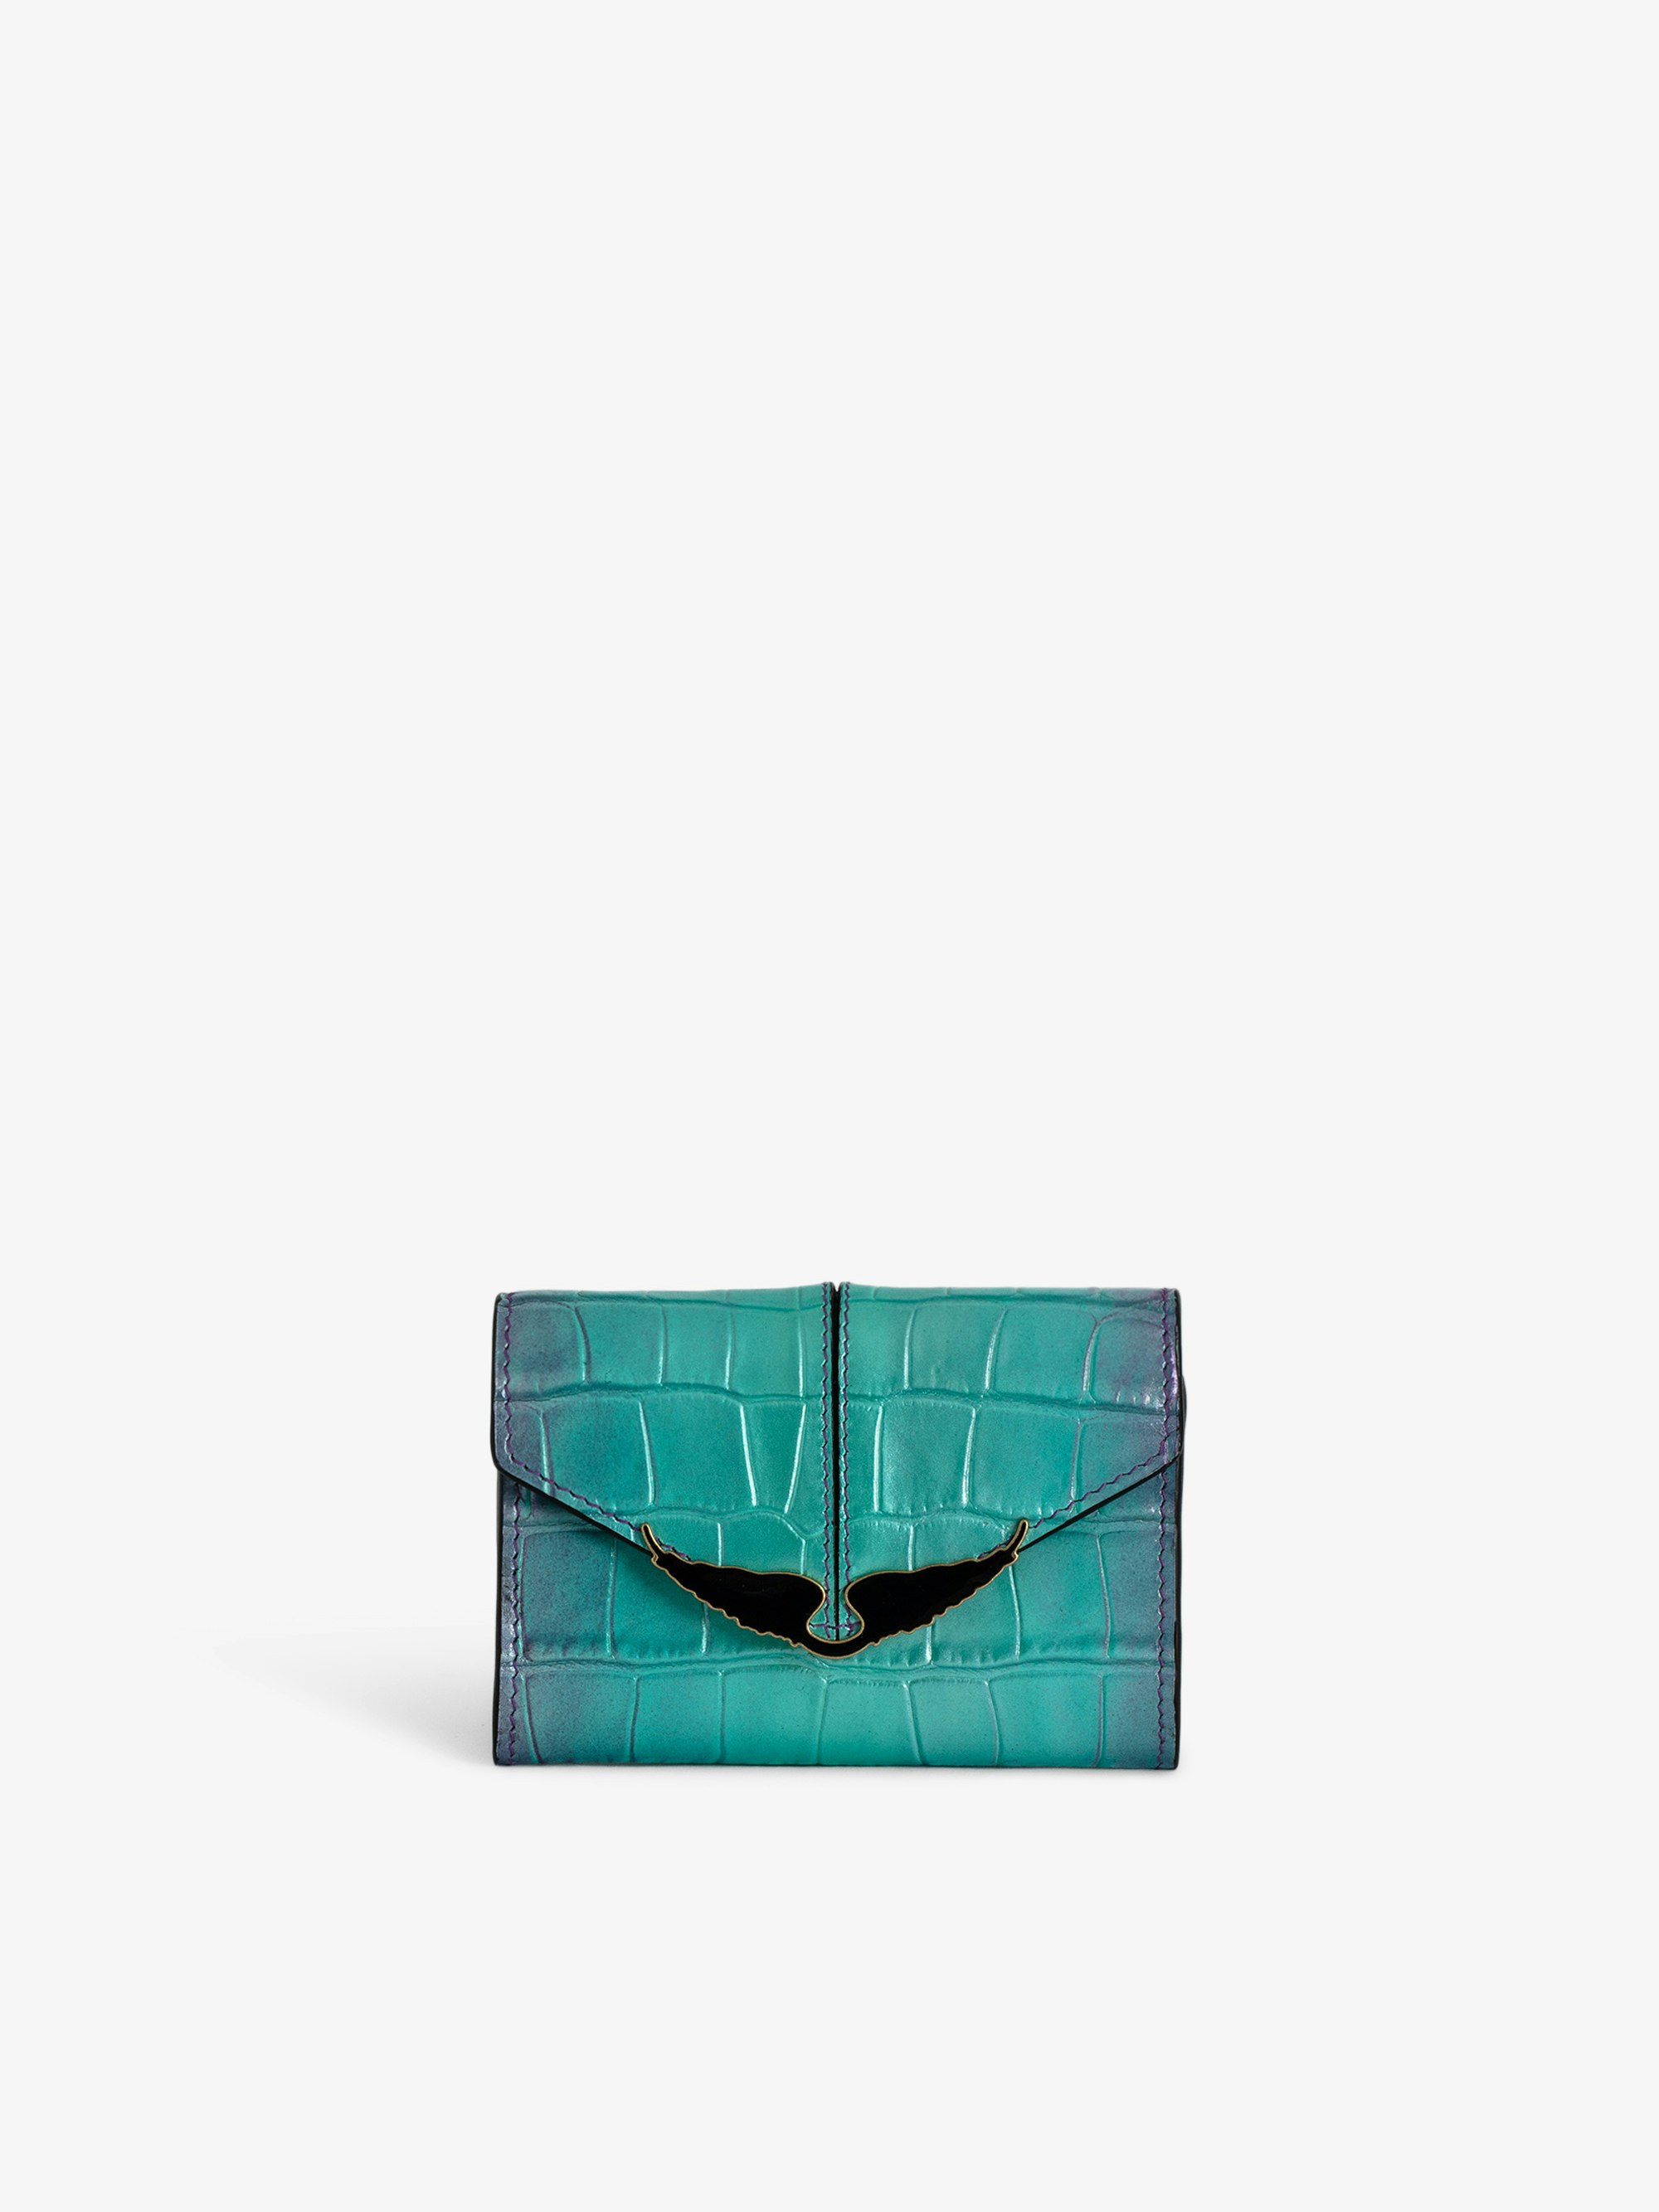 Brieftasche Borderline Geprägt - Kleine Brieftasche aus Metallic-Leder mit Kroko-Prägung in Violett mit Klappe und Flügeln.